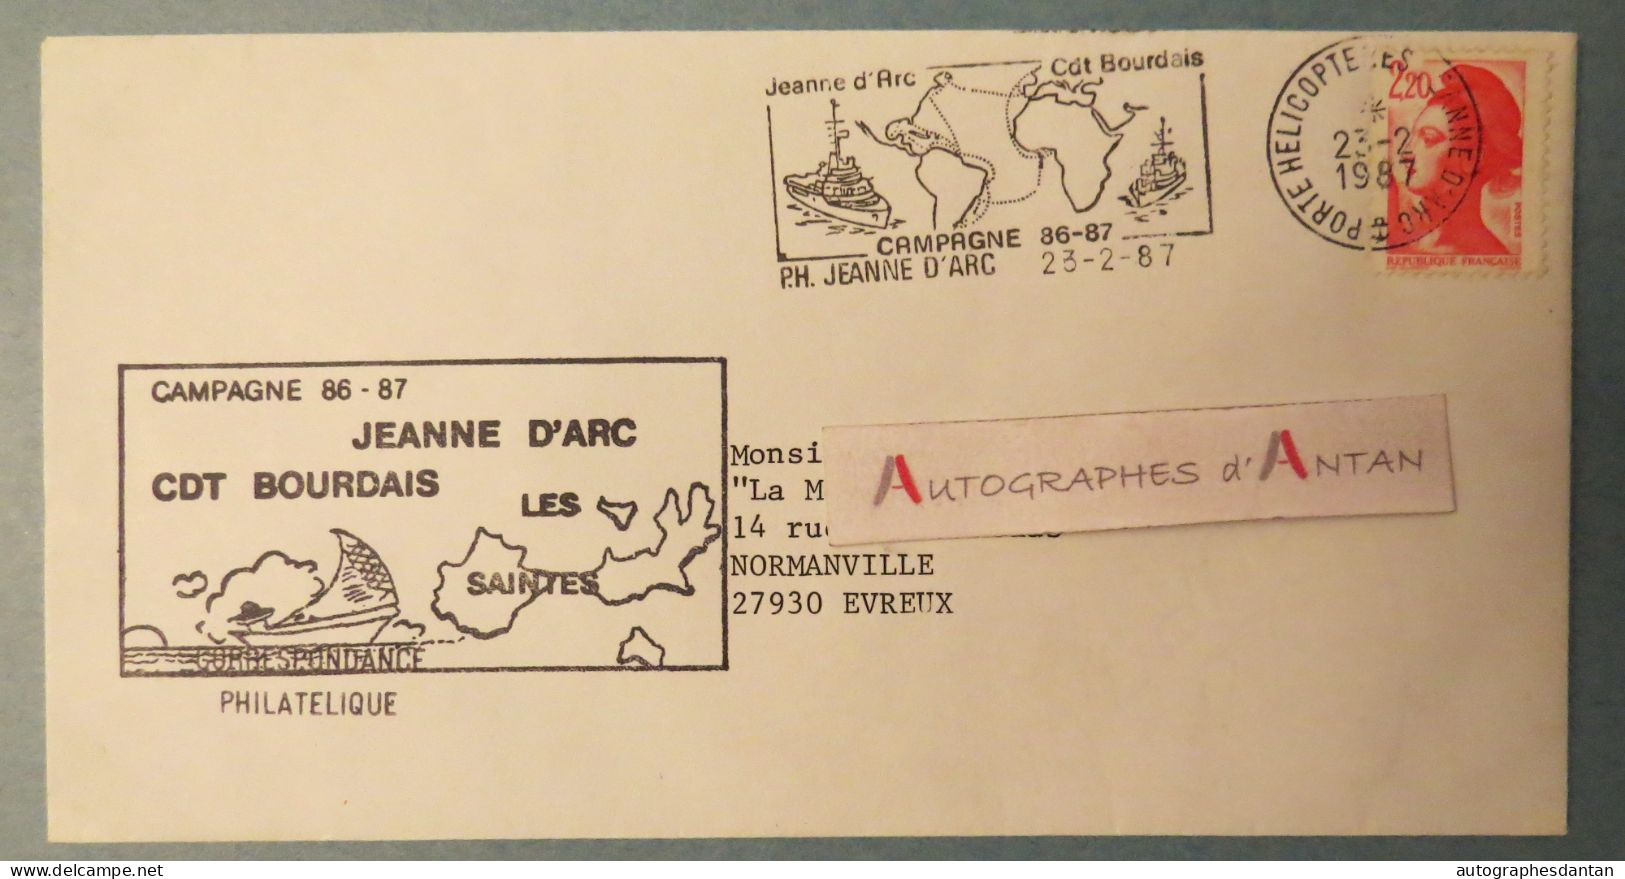 ● Jeanne D'Arc - Cdt Bourdais - Les Saintes Guadeloupe - Campagne 86-87 - Poste Navale - Porte Hélicoptère - Naval Post